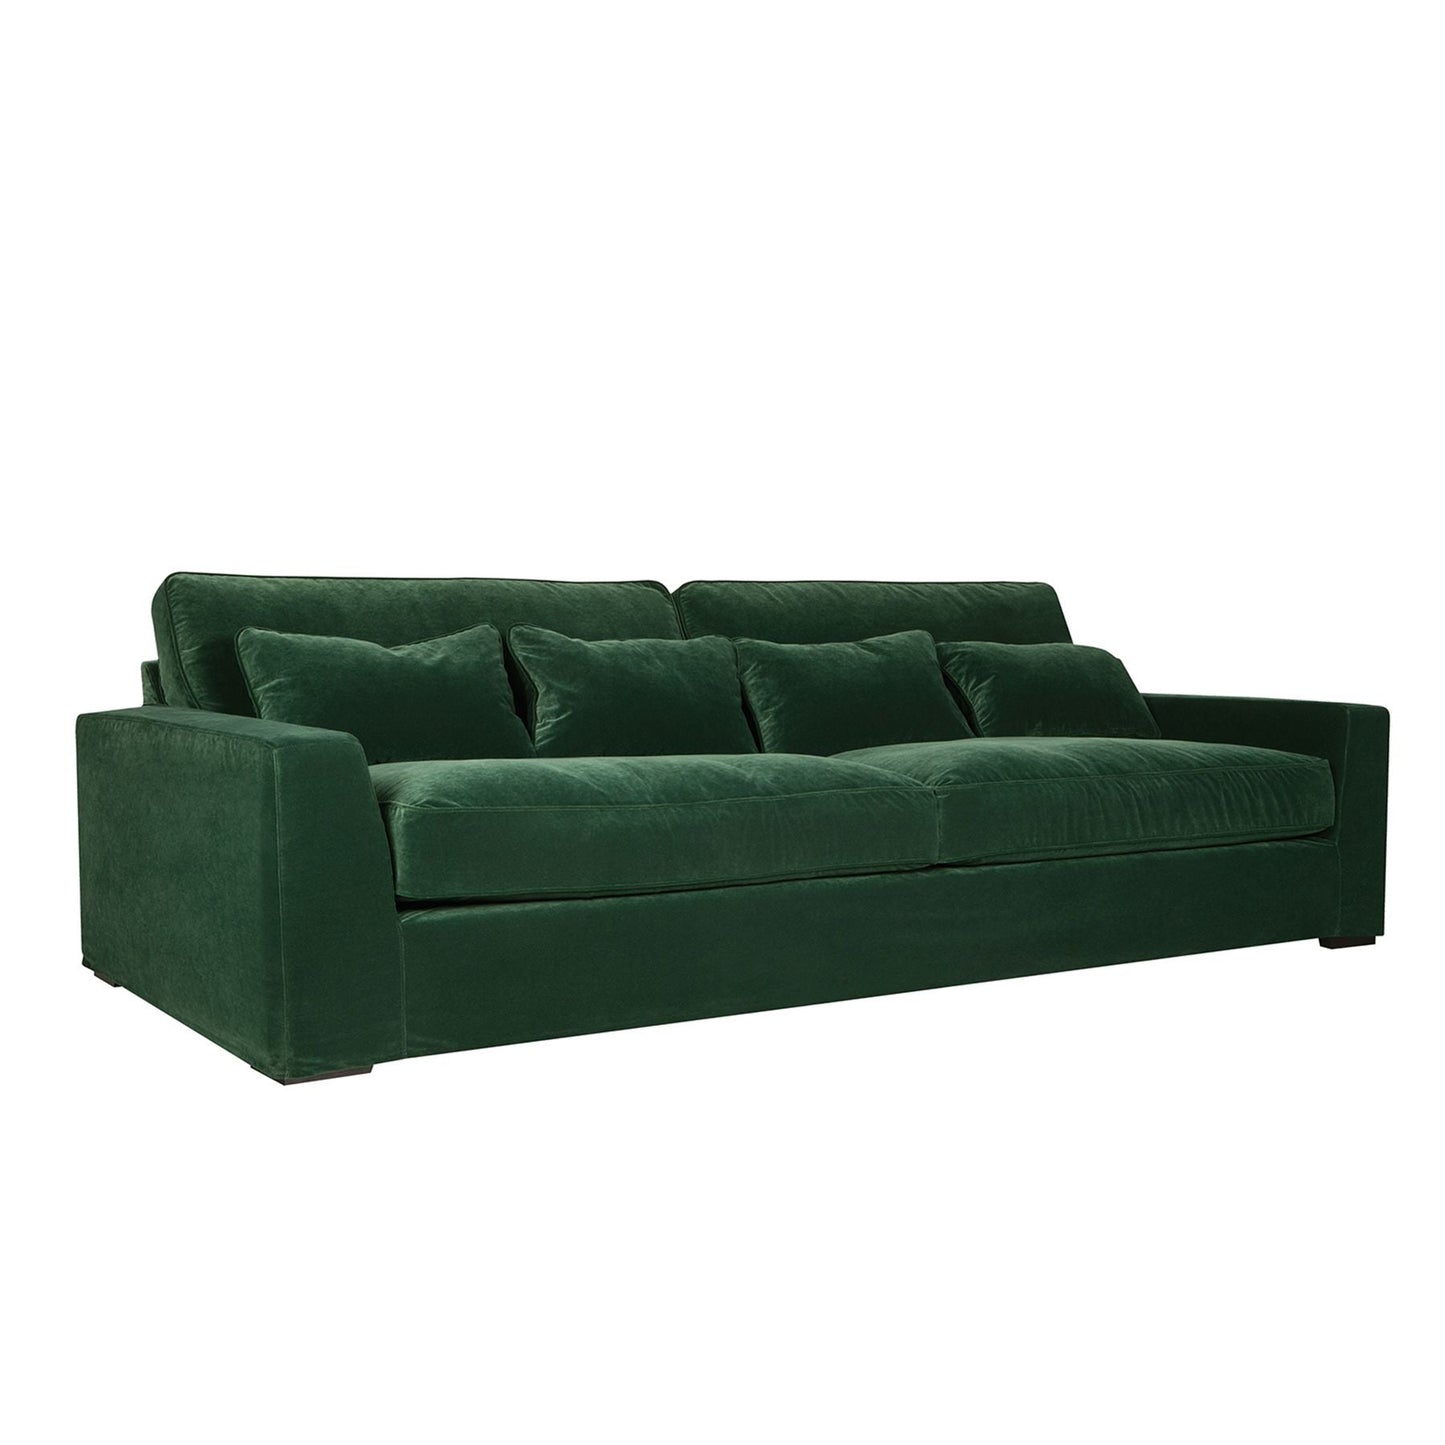 New York 4-seter XL sofa, en del av kategorien 4-seter - At Home Interiør